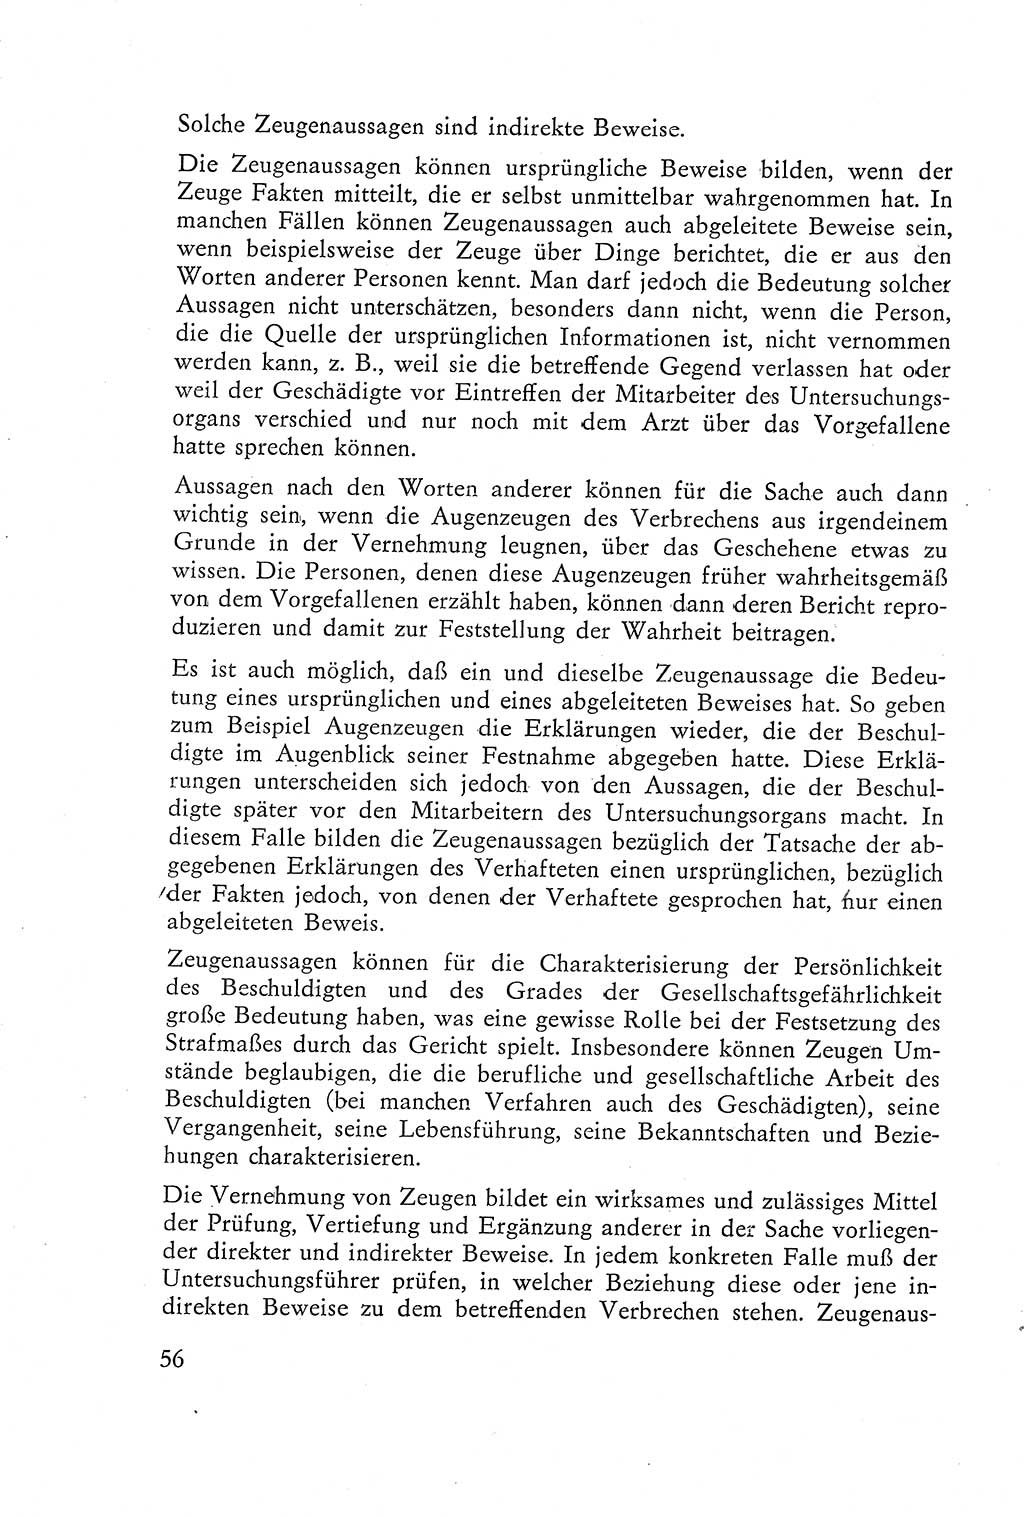 Die Vernehmung [Deutsche Demokratische Republik (DDR)] 1960, Seite 56 (Vern. DDR 1960, S. 56)